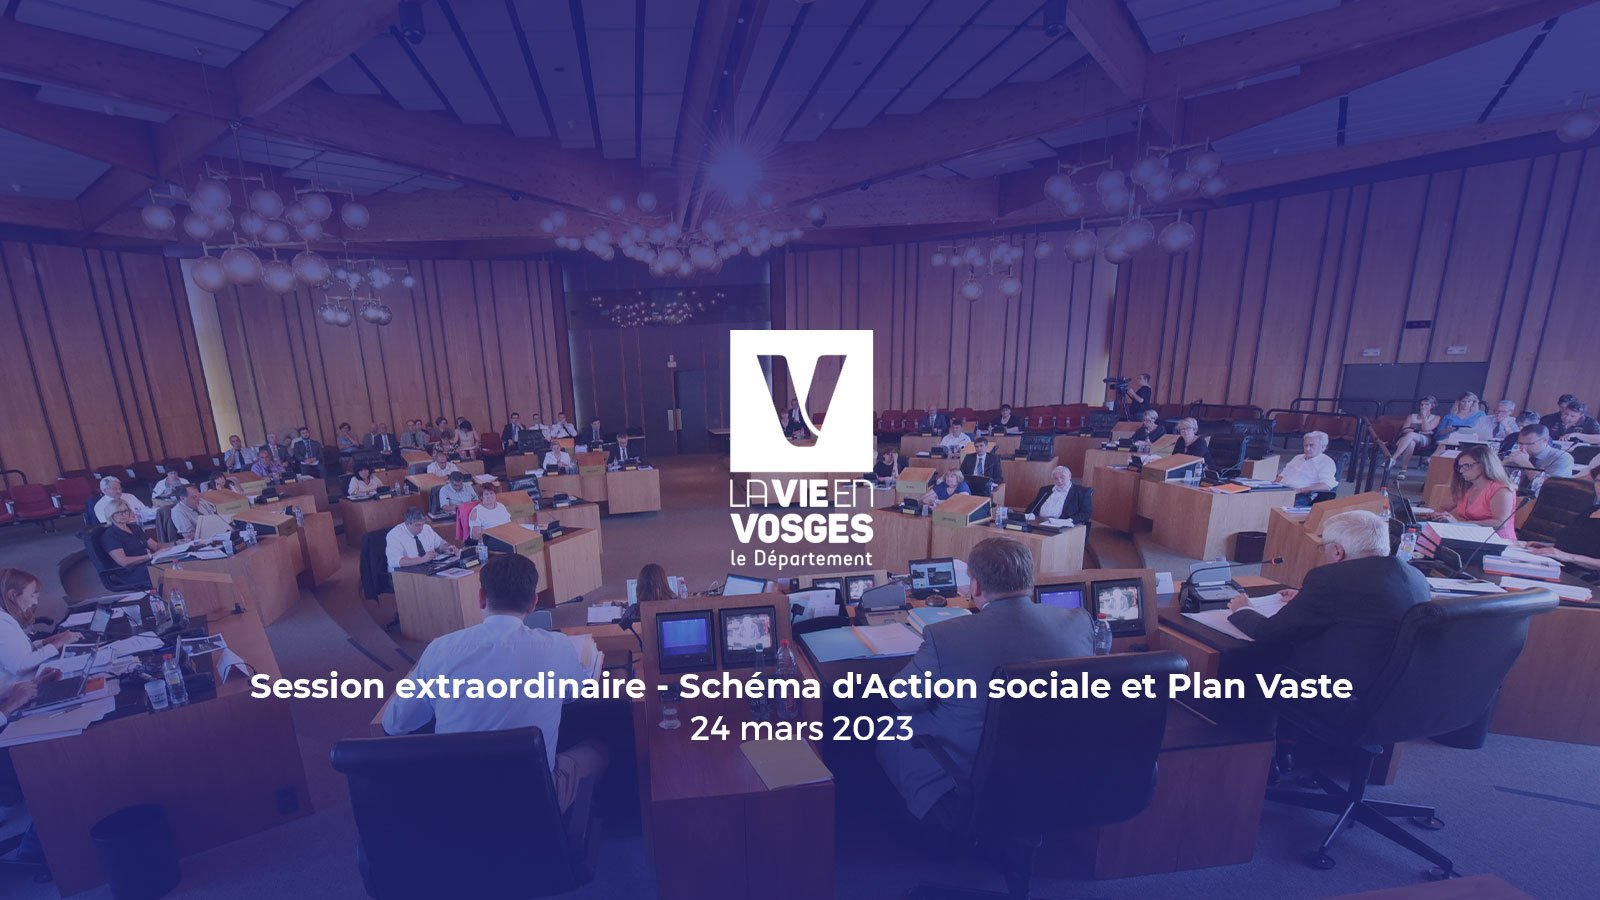 Session extraordinaire - Schéma d'Action sociale et Plan Vaste